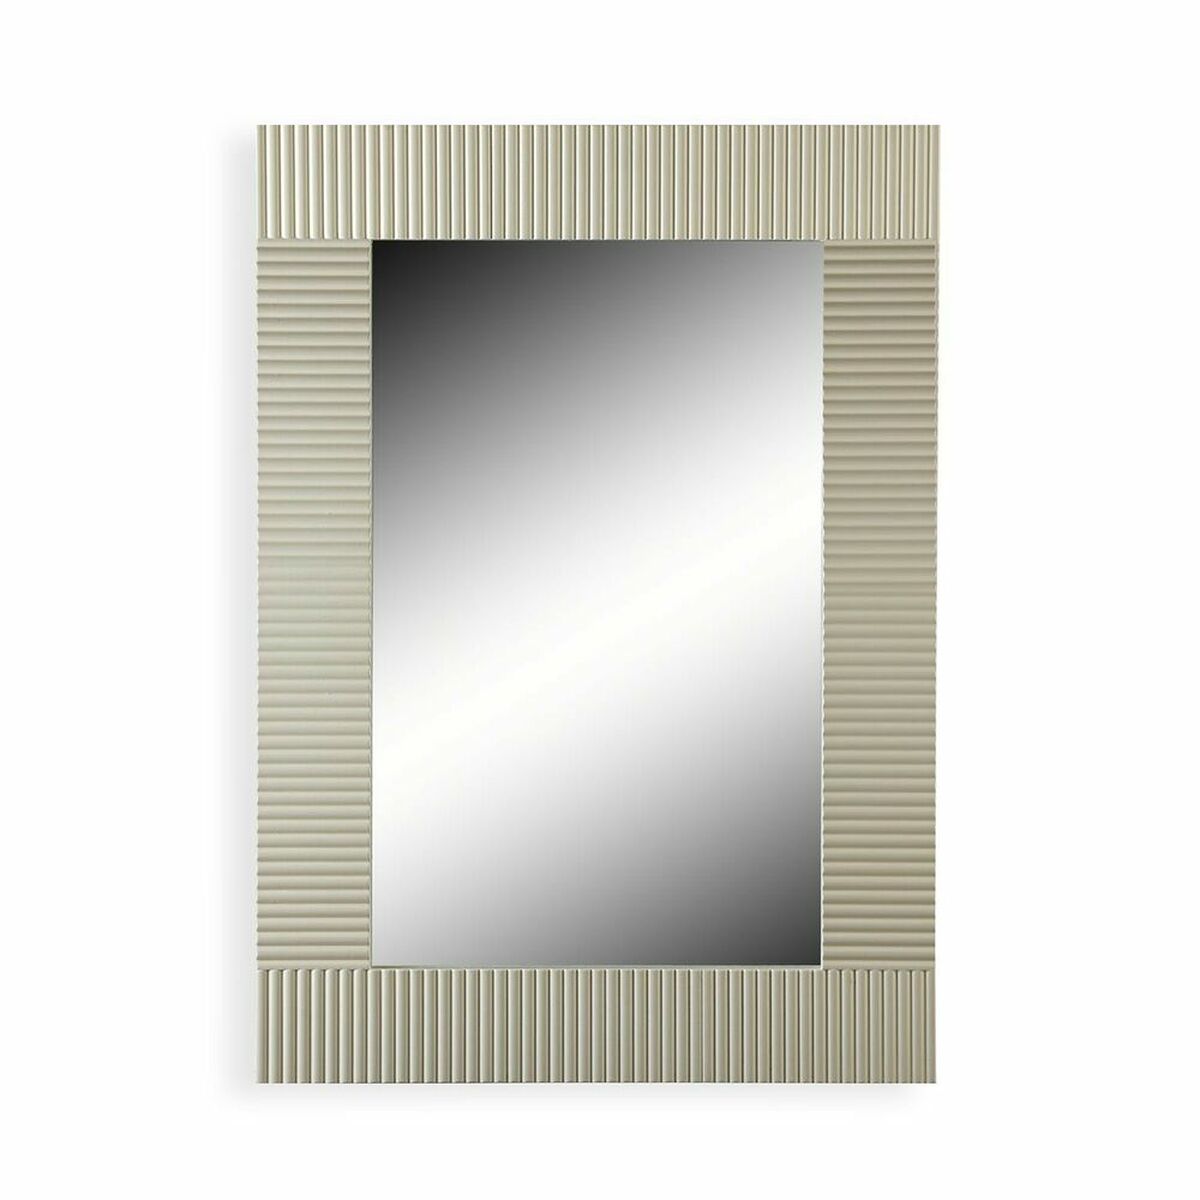 Увеличително Огледало Сгъваем Нокти (2,5 x 8,5 x 6,2 cm) (12 броя)